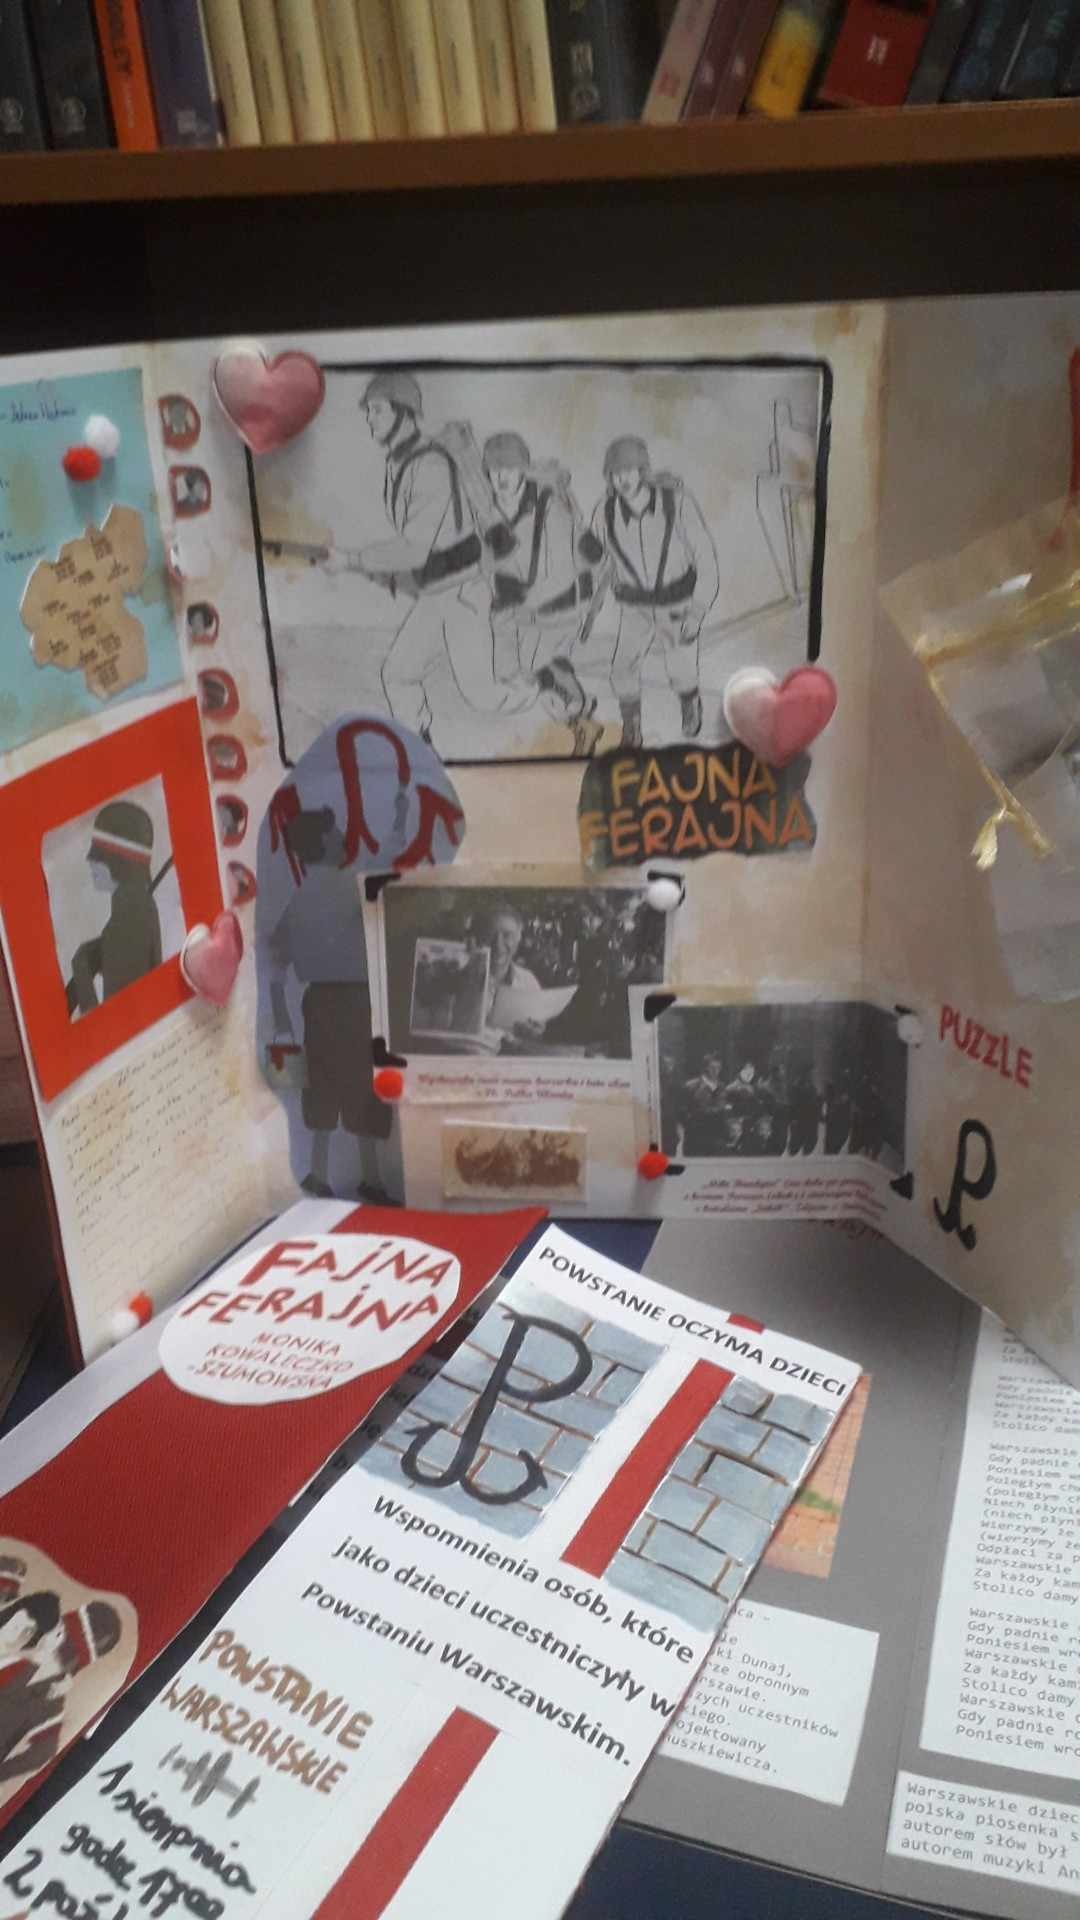 Wystawa prac konkursu "Warto czytać" w projekcie "Historia odkryta na nowo" - lapbooki do książki "Fajna Ferajna"